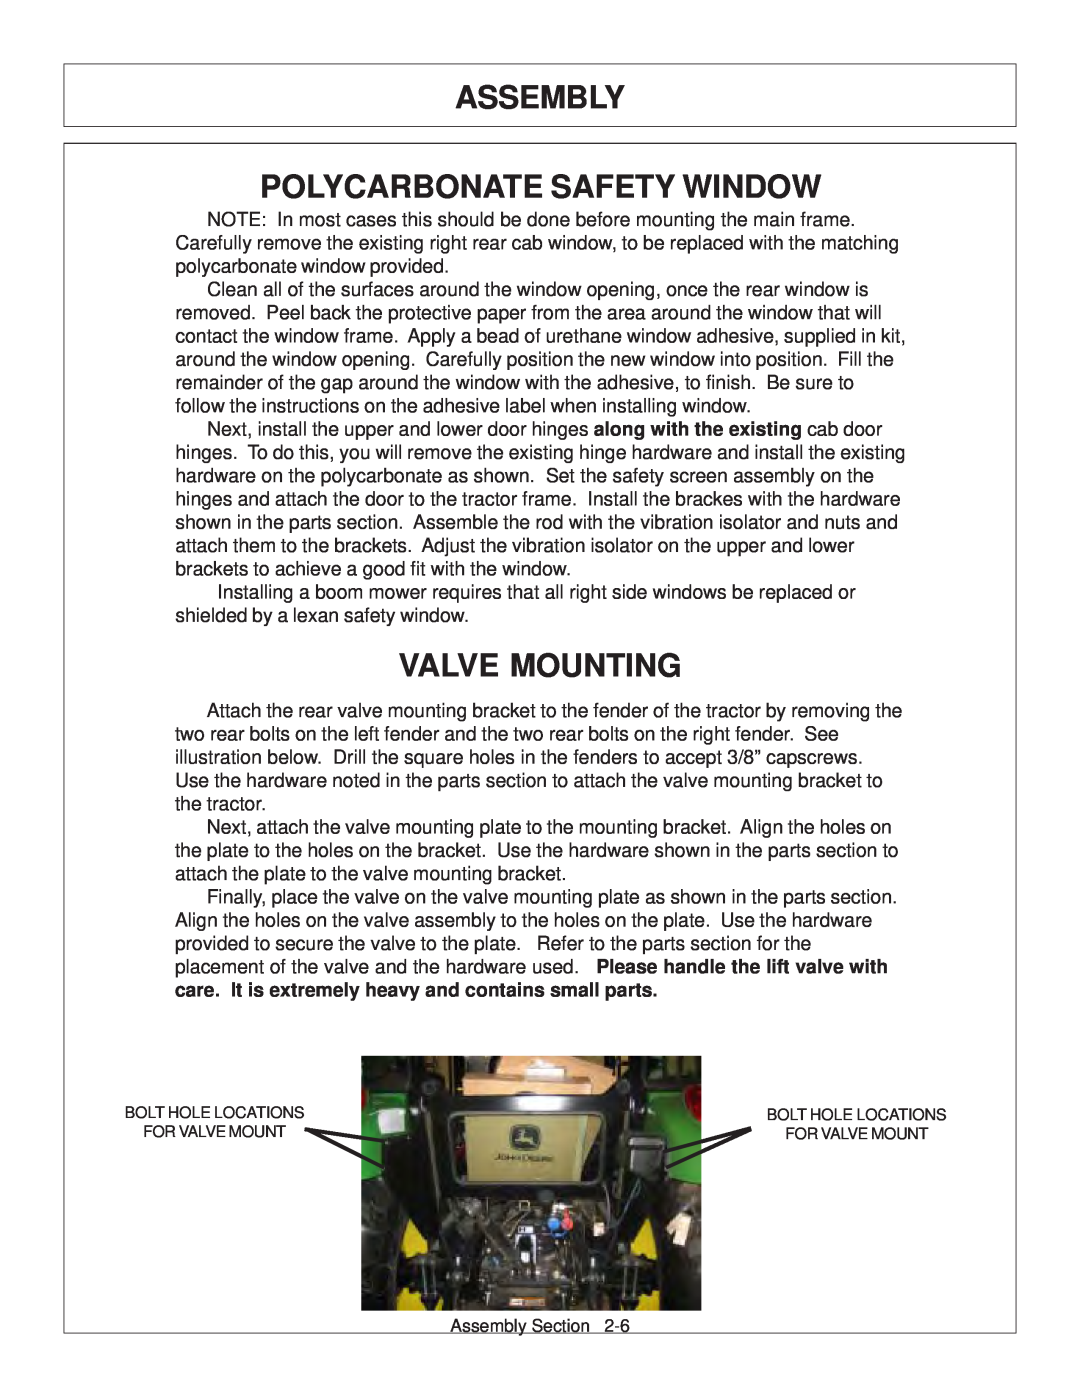 Tiger JD 5083E, JD 5101E, JD 5093E manual Assembly Polycarbonate Safety Window, Valve Mounting 